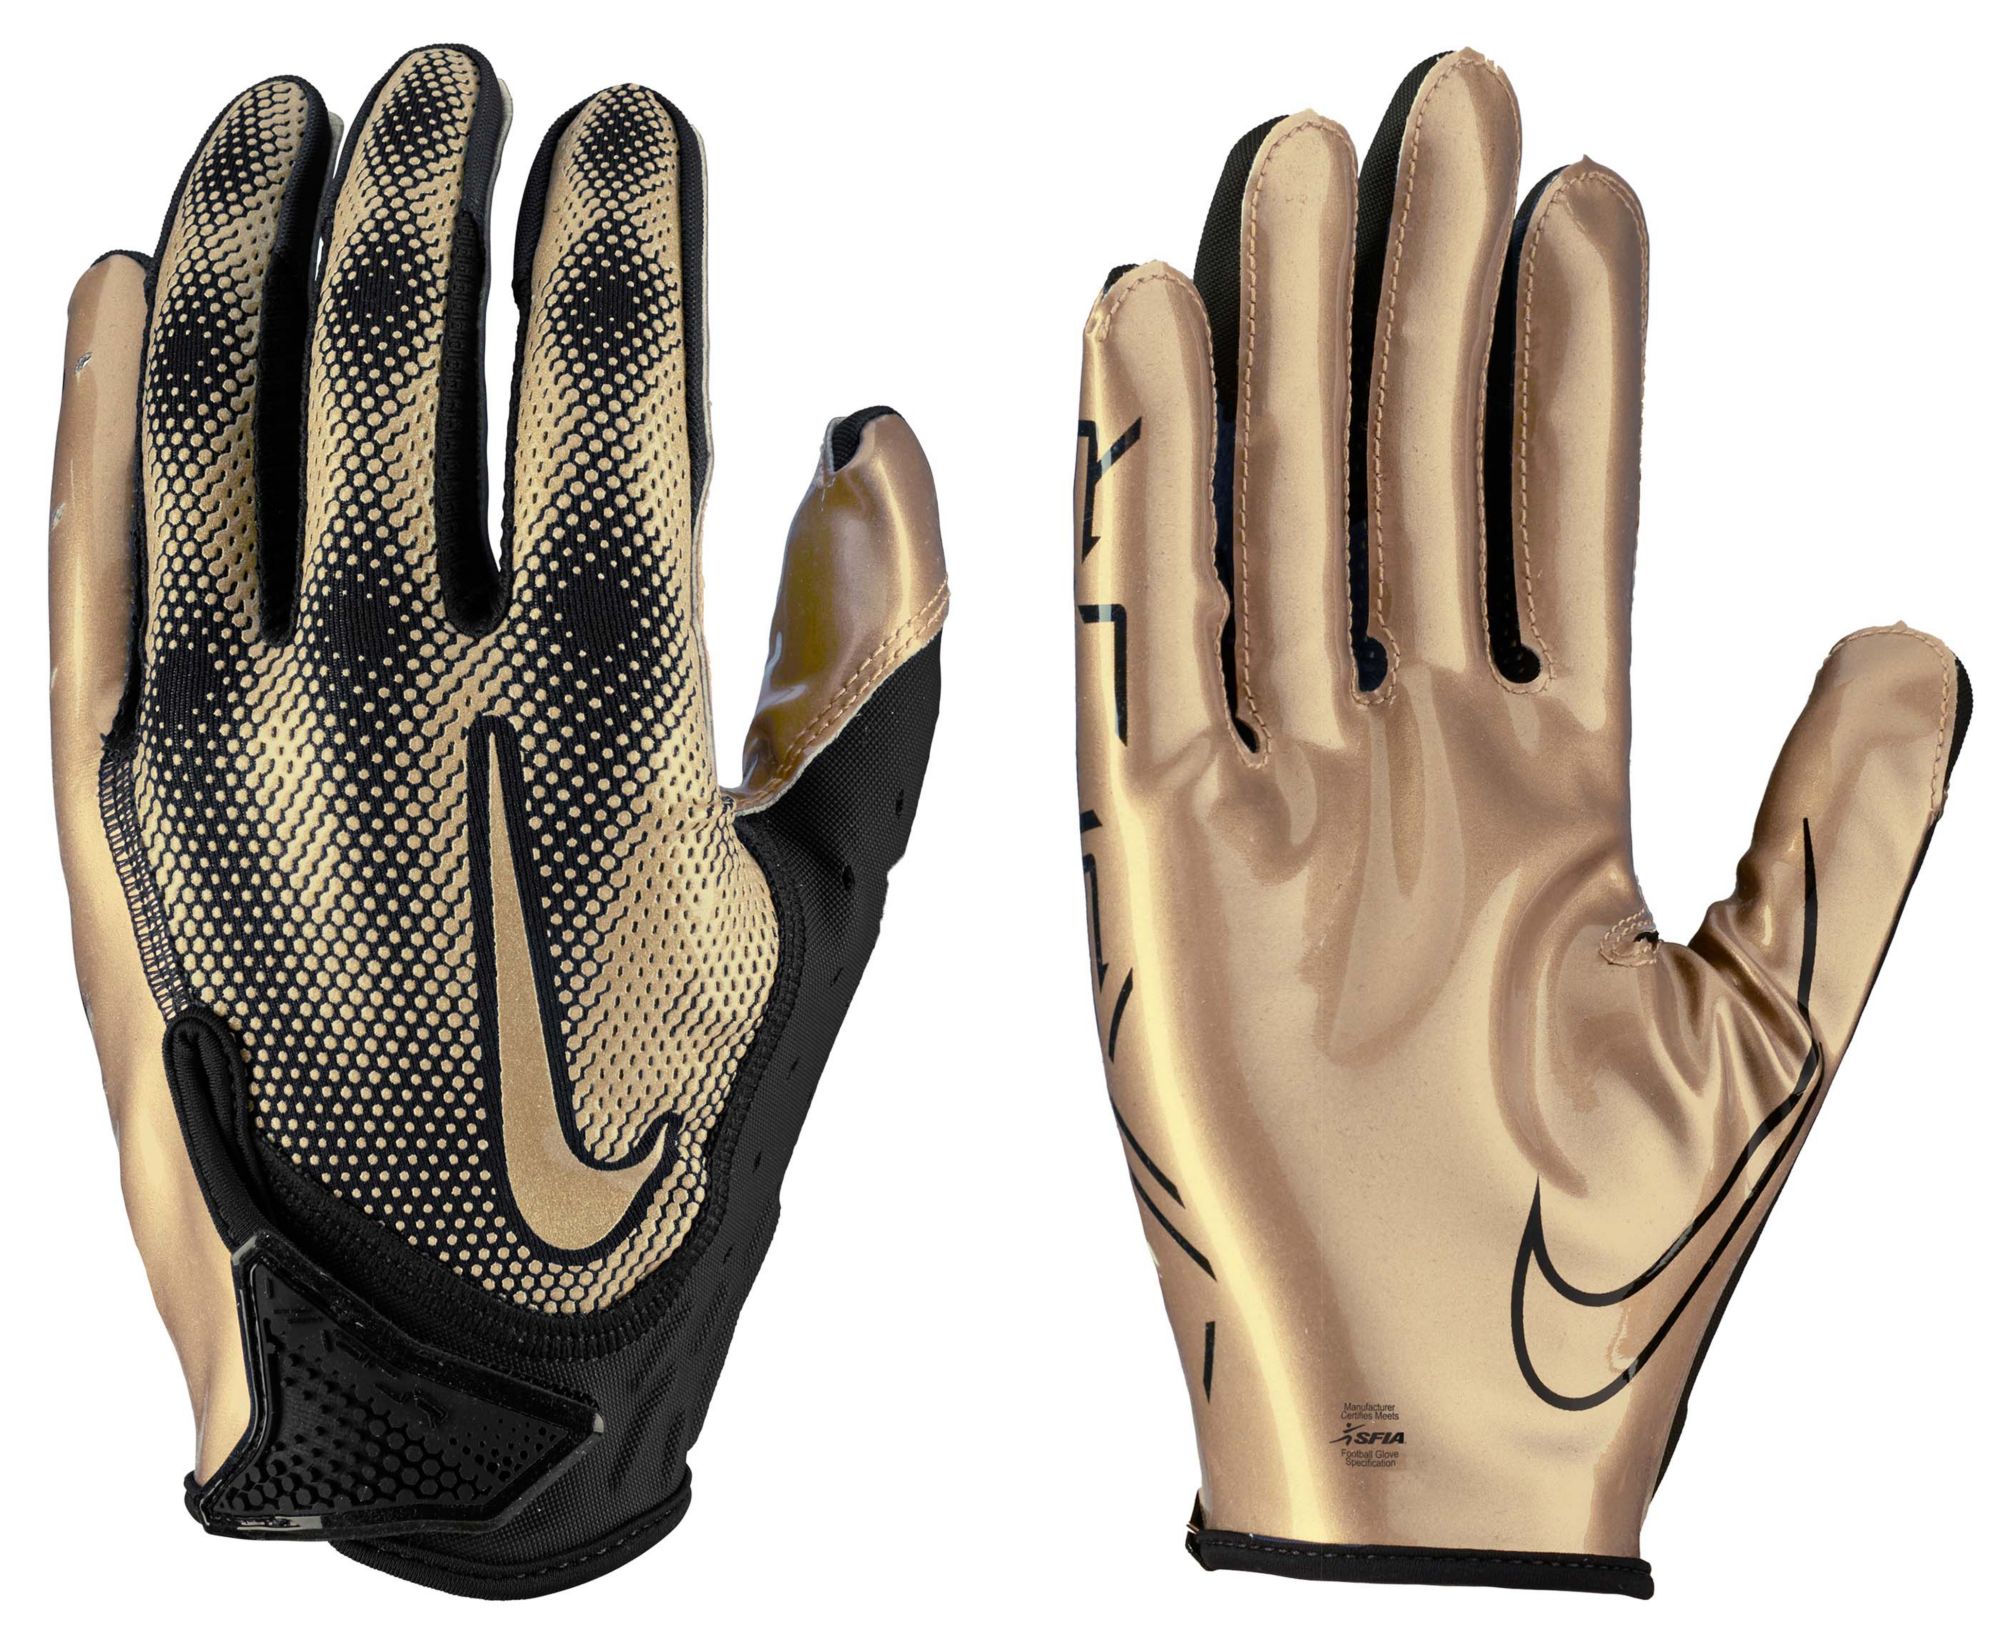 Nike / Vapor Jet 7.0 Football Gloves